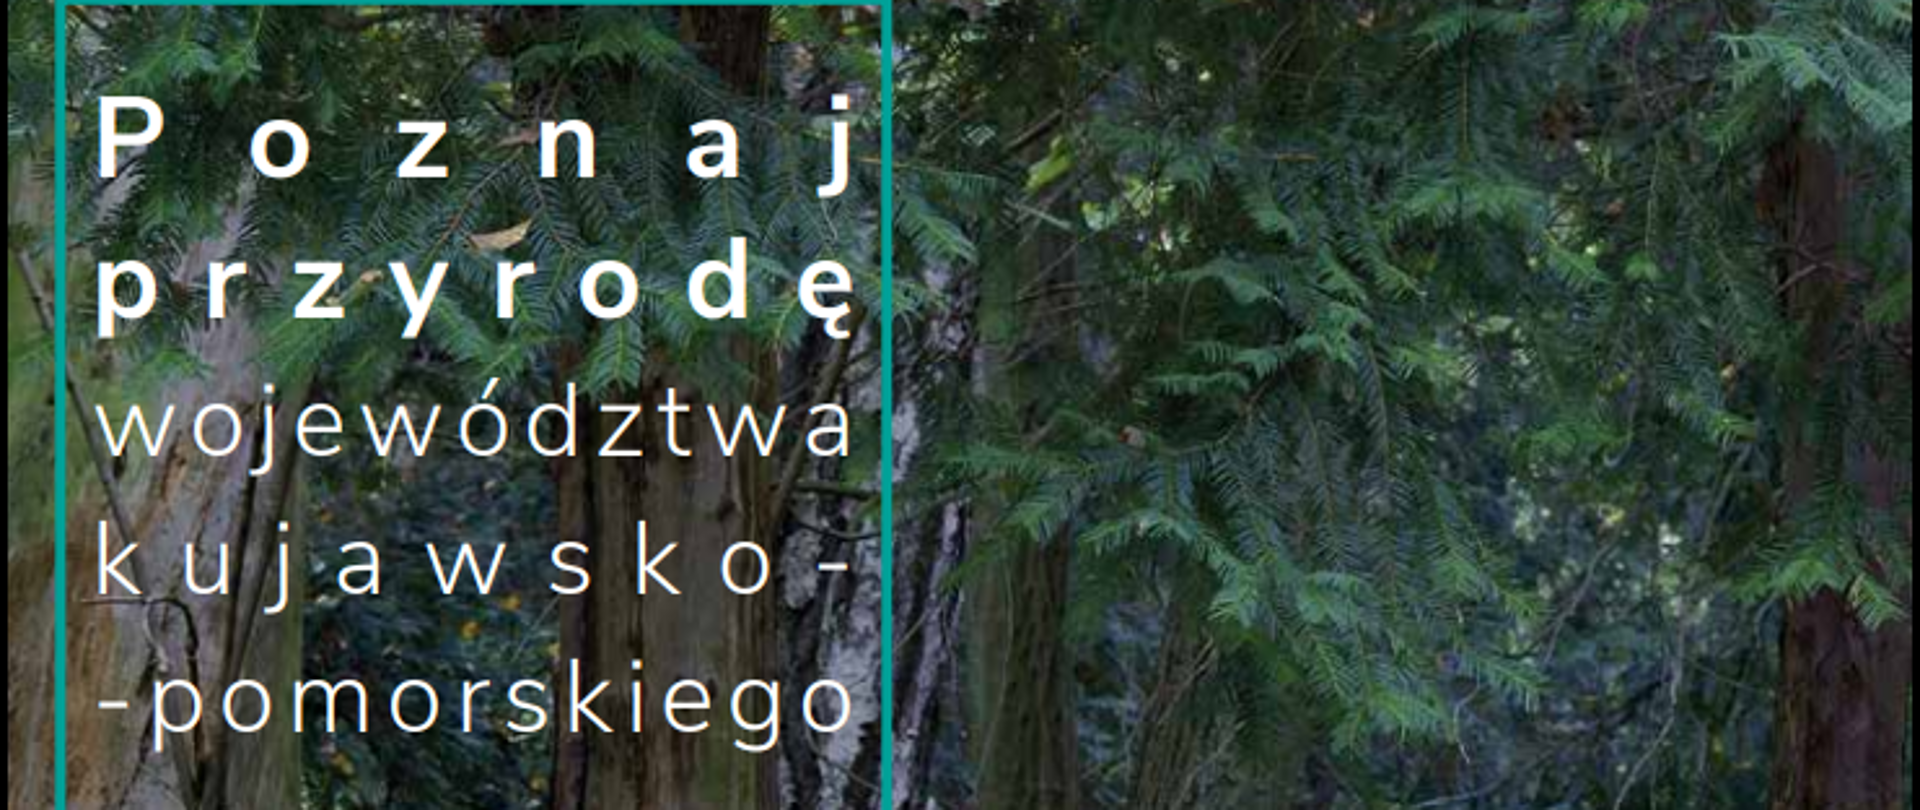 Napis Poznaj przyrodę województwa kujawsko-pomorskiego na tle drzew